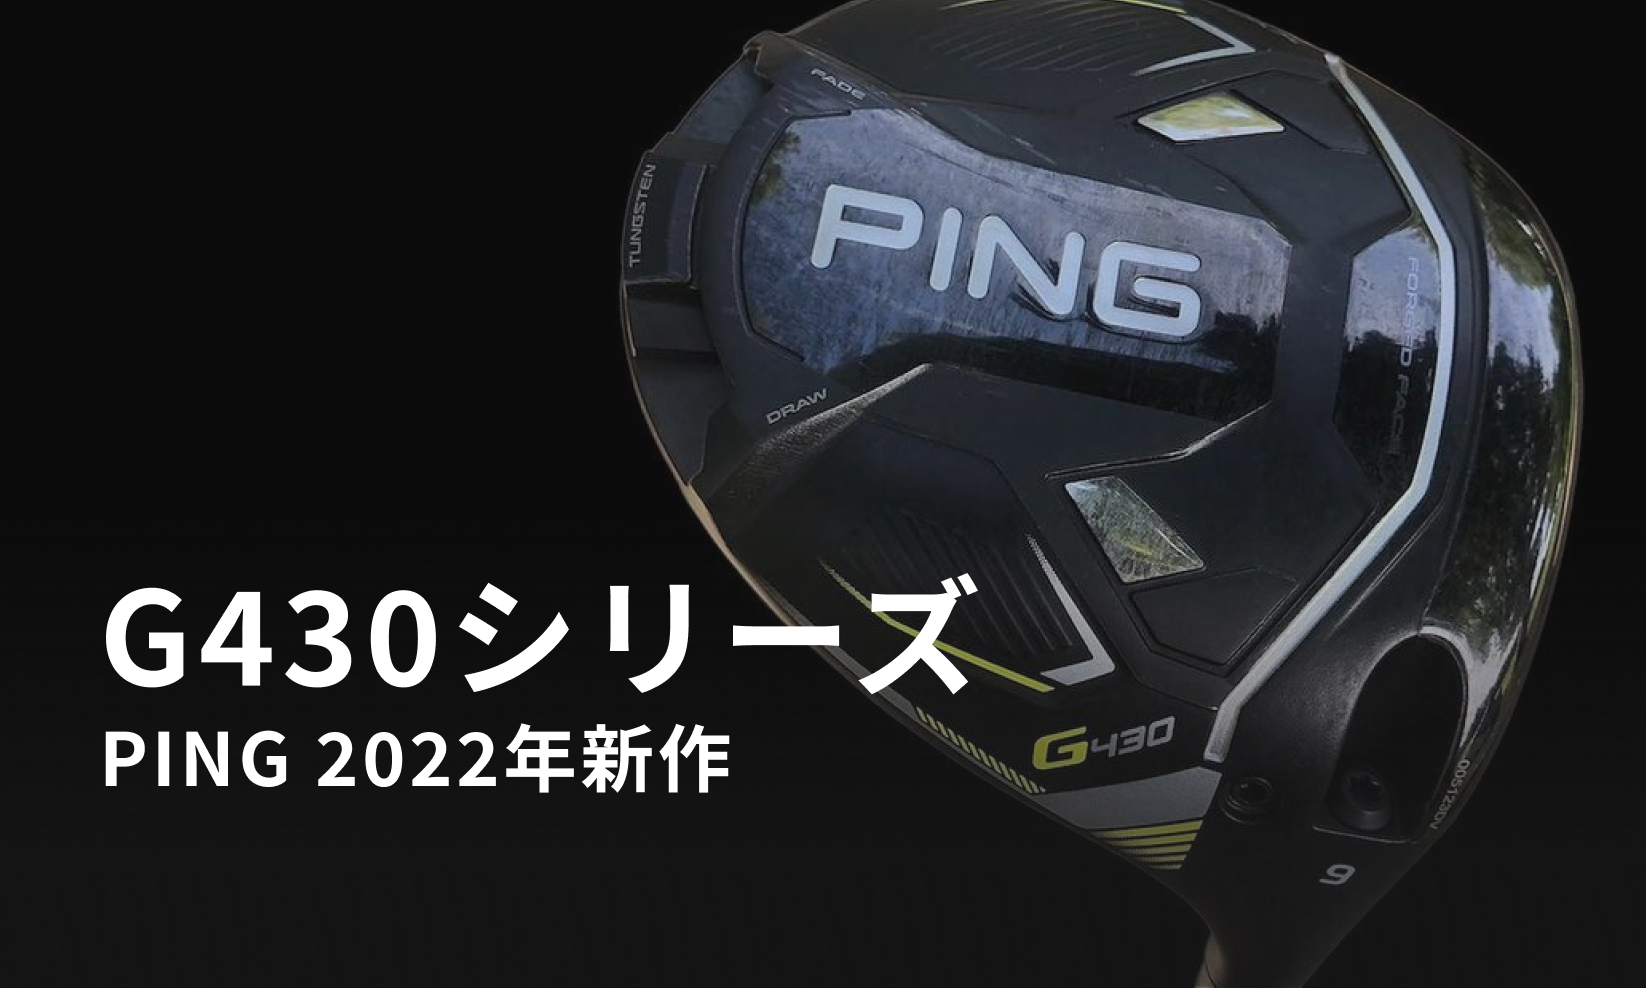 PING 2022年新作G430 シリーズの新情報【リーク画像あり】